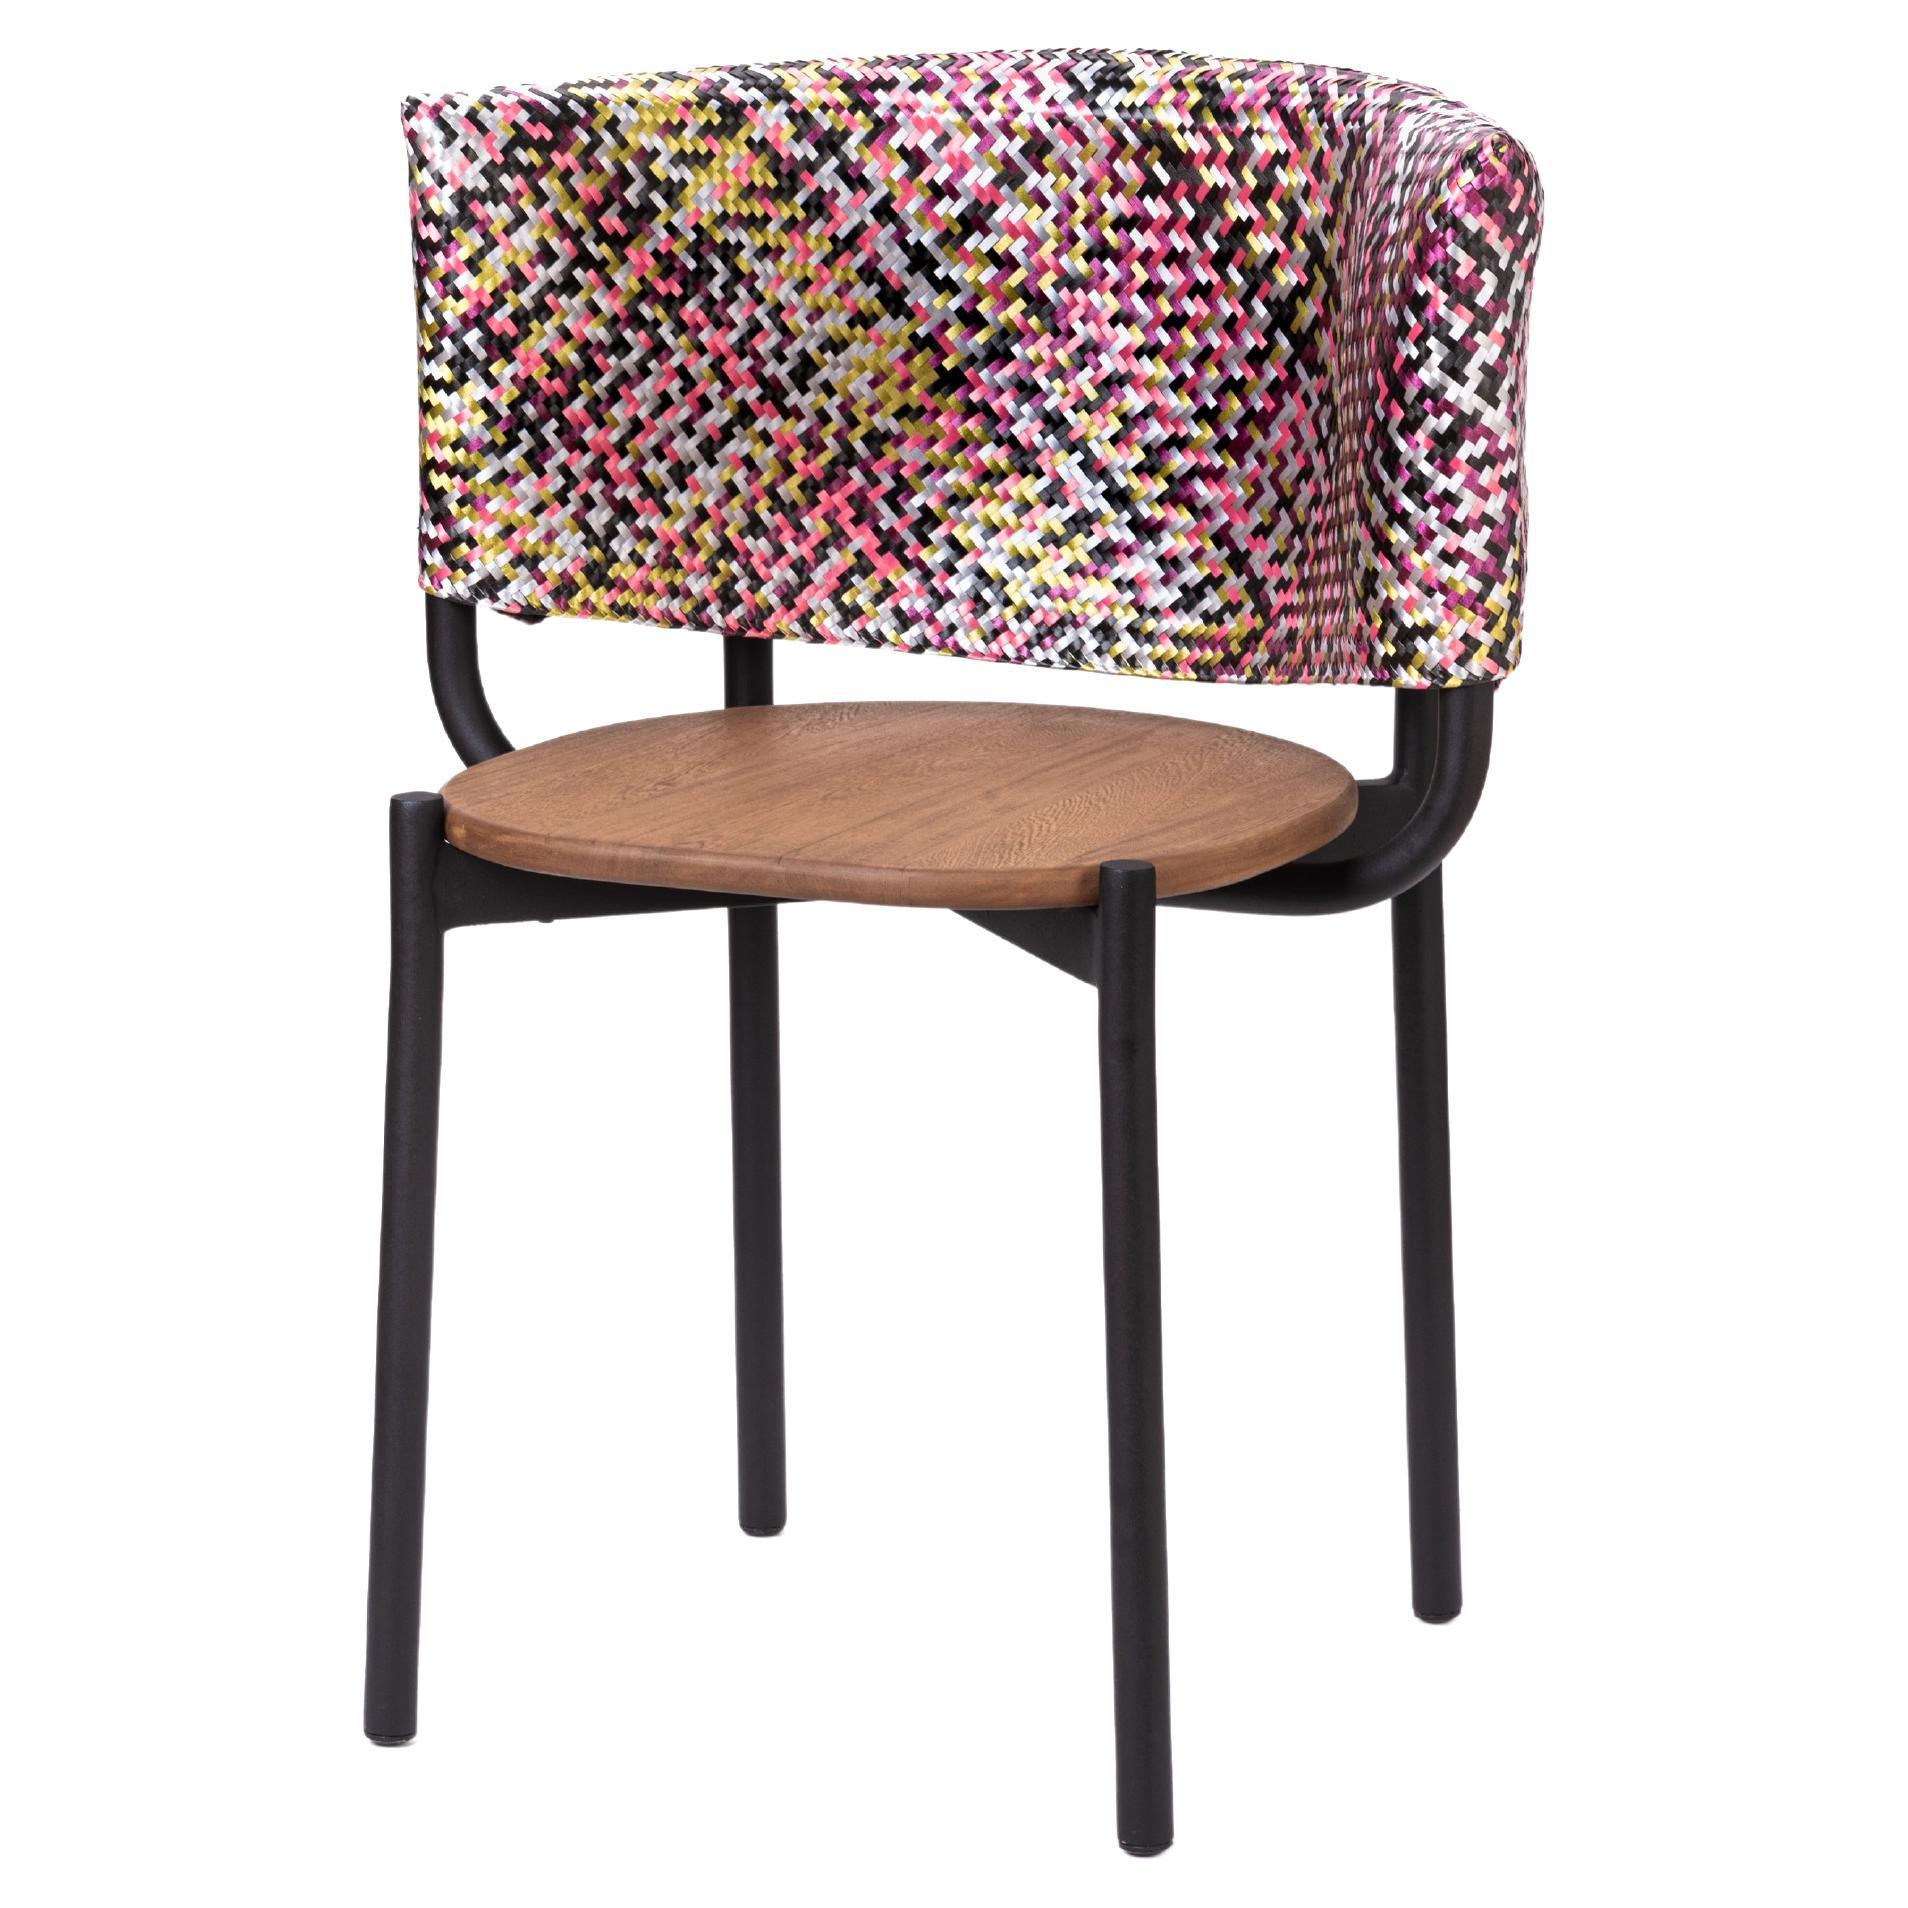 Schwarzer Outdoor-Stuhl mit handgefertigter, geflochtener Rückenlehne aus Kunststofffasern